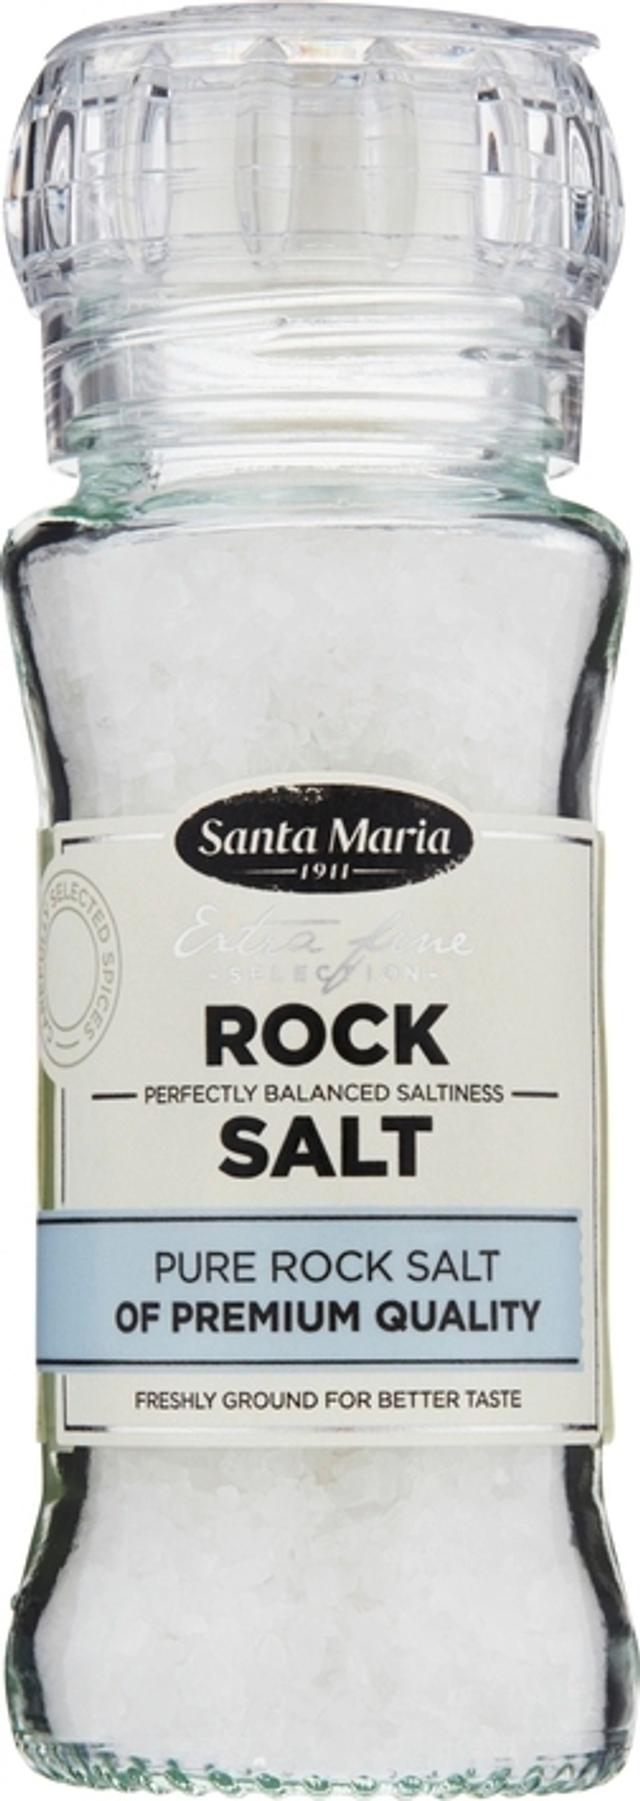 Santa Maria Rock Salt vuorisuola suolamylly 140 g